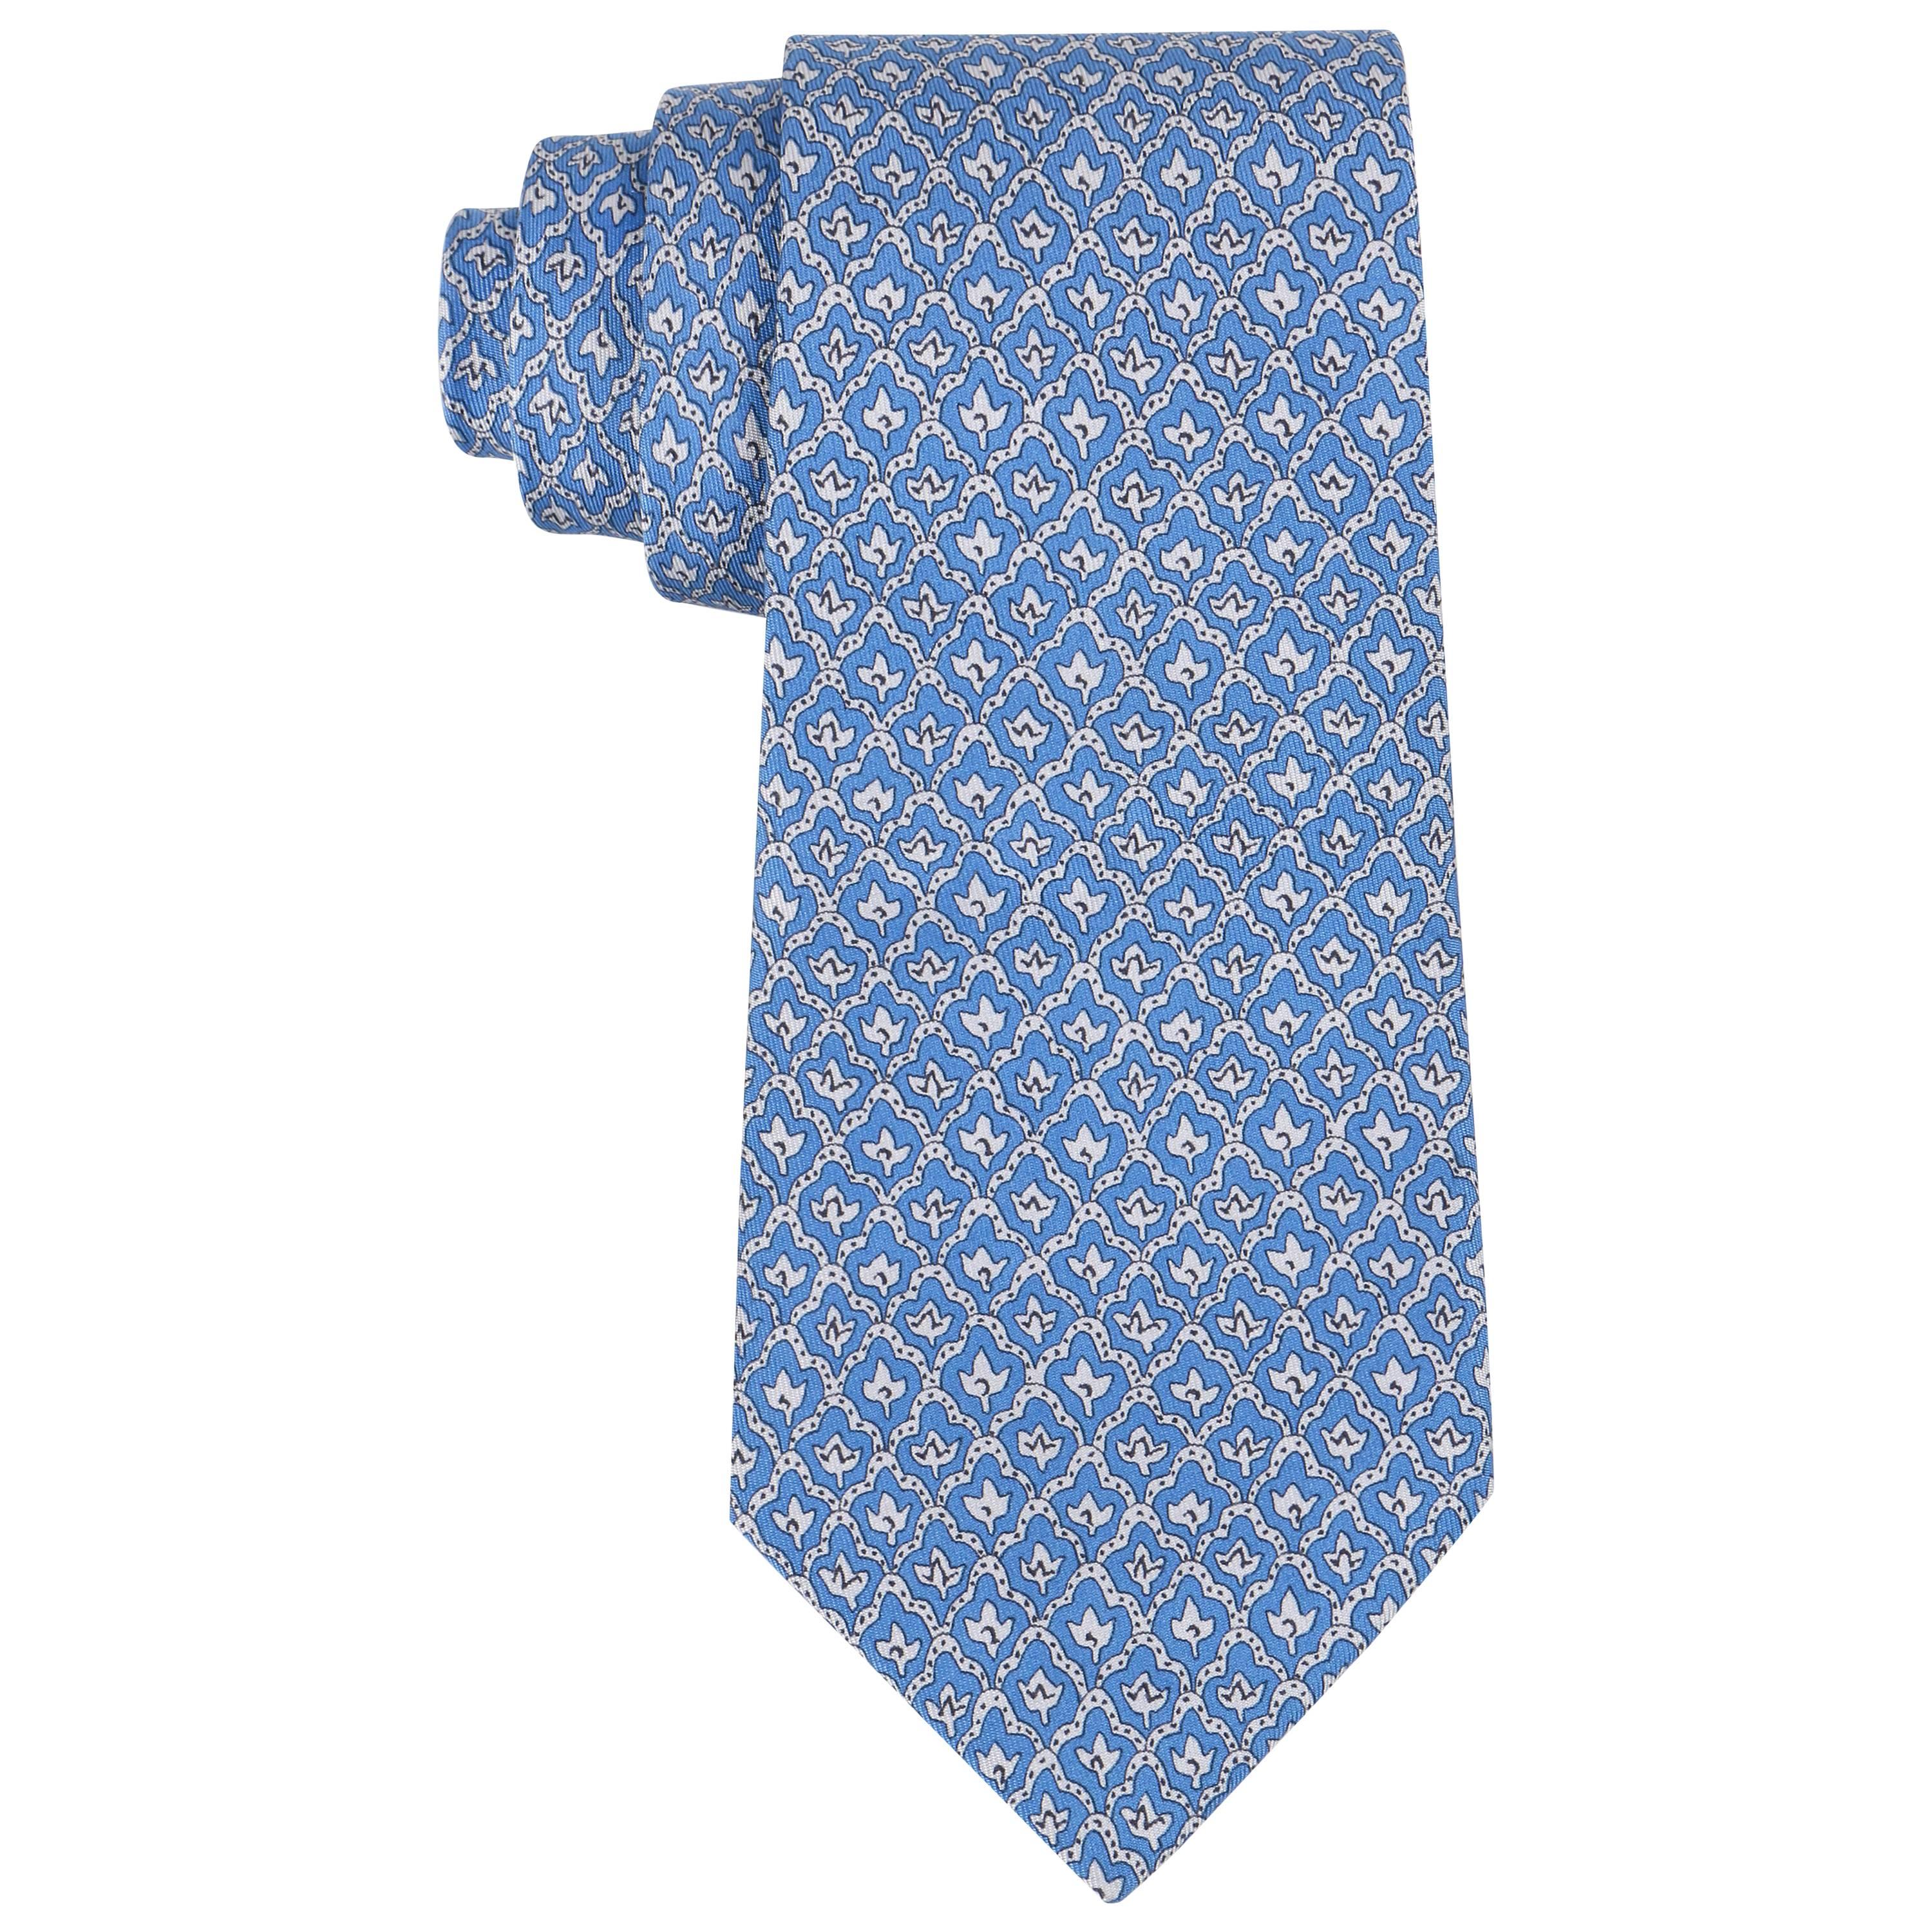 HERMES 5 Fold Cornflower Blue White Diamond Leaf Print Silk Necktie Tie